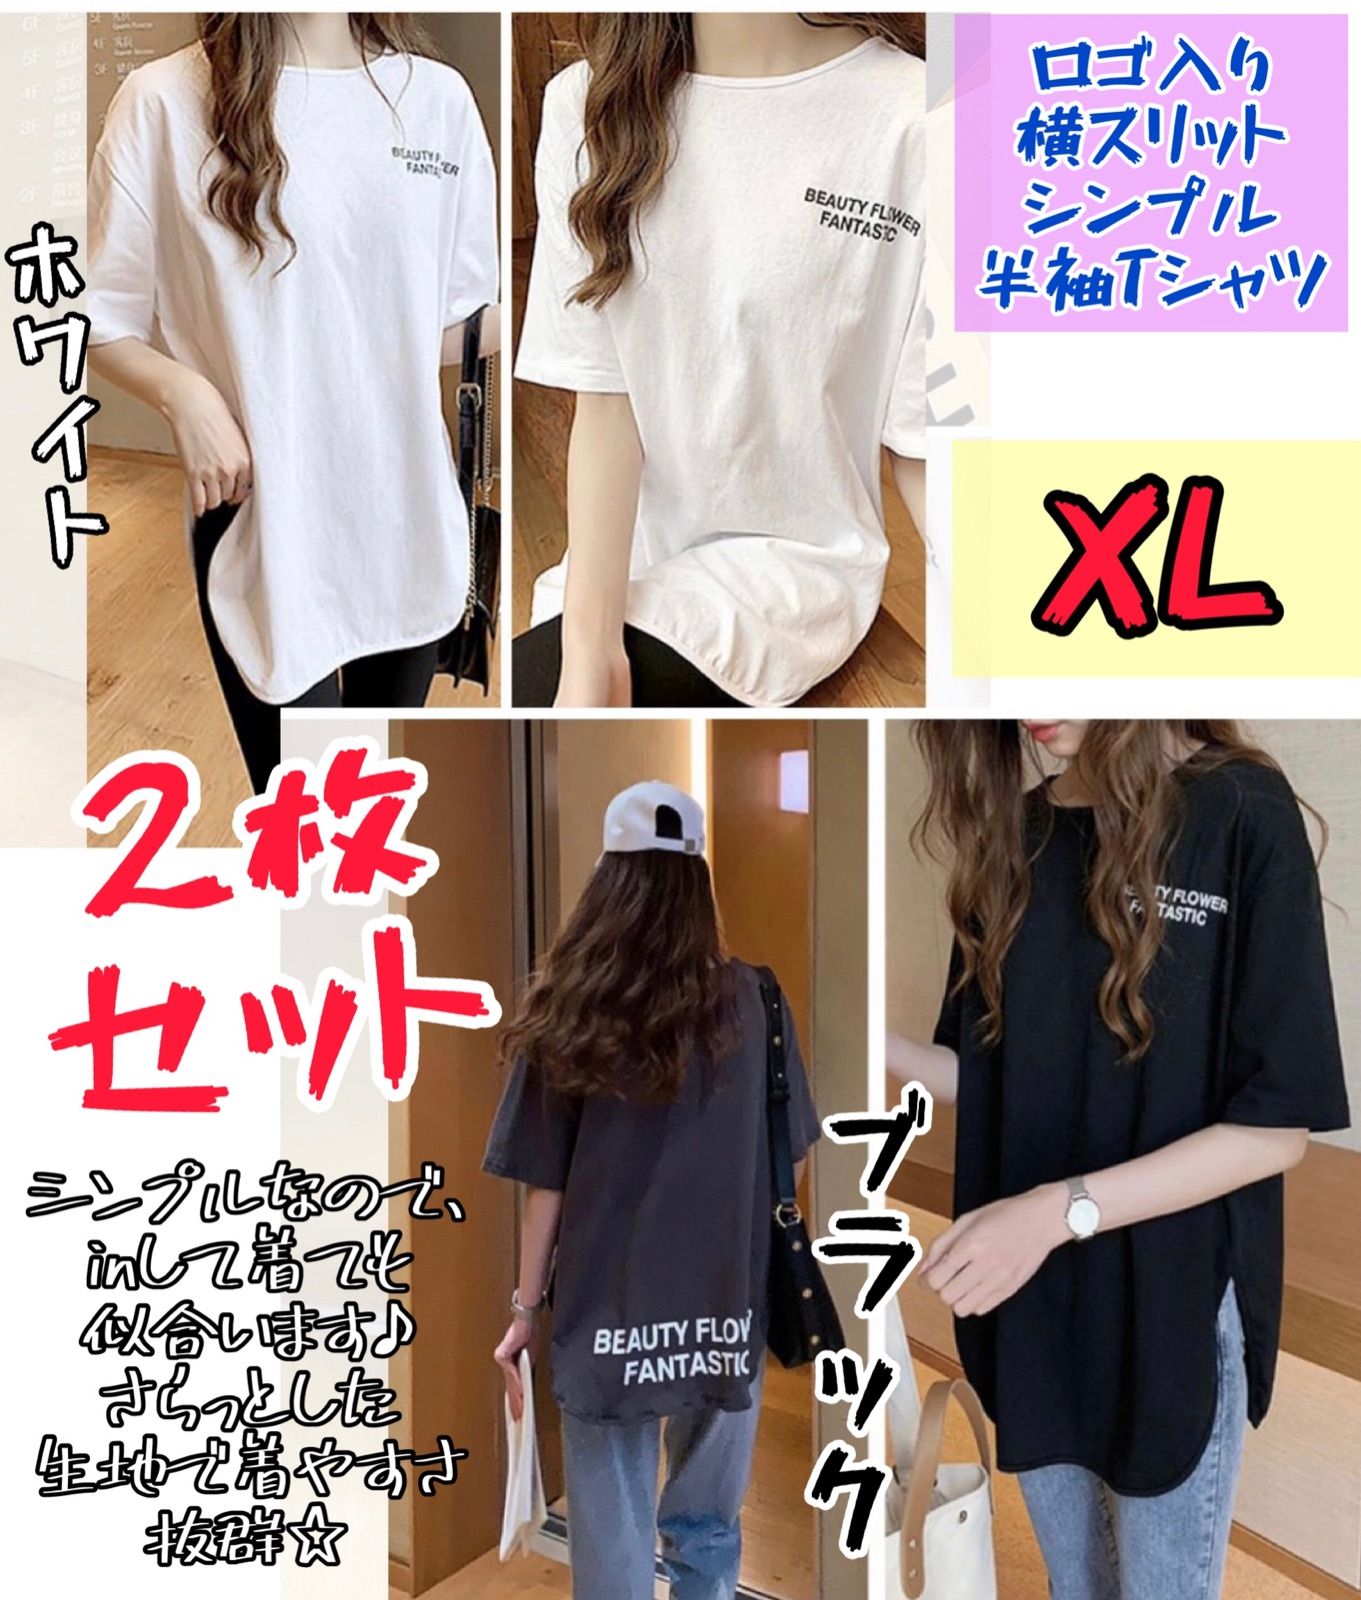 レディース☆ロゴ入り横スリットシンプル半袖Tシャツ 2枚セットXL 新品